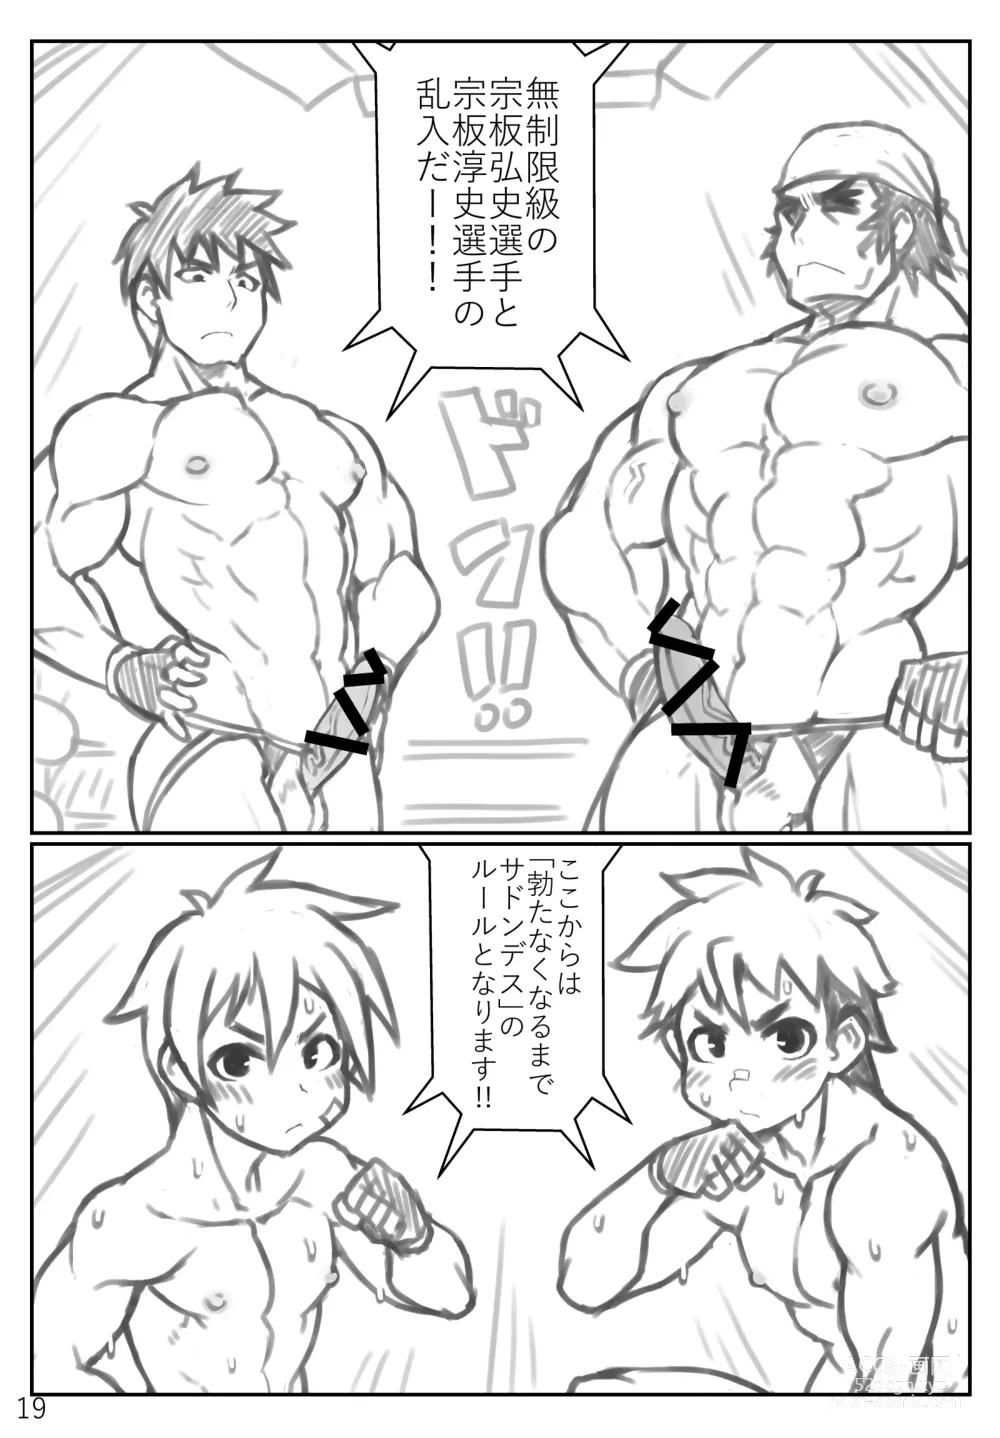 Page 19 of doujinshi Puroresu ♂ no youna nanika